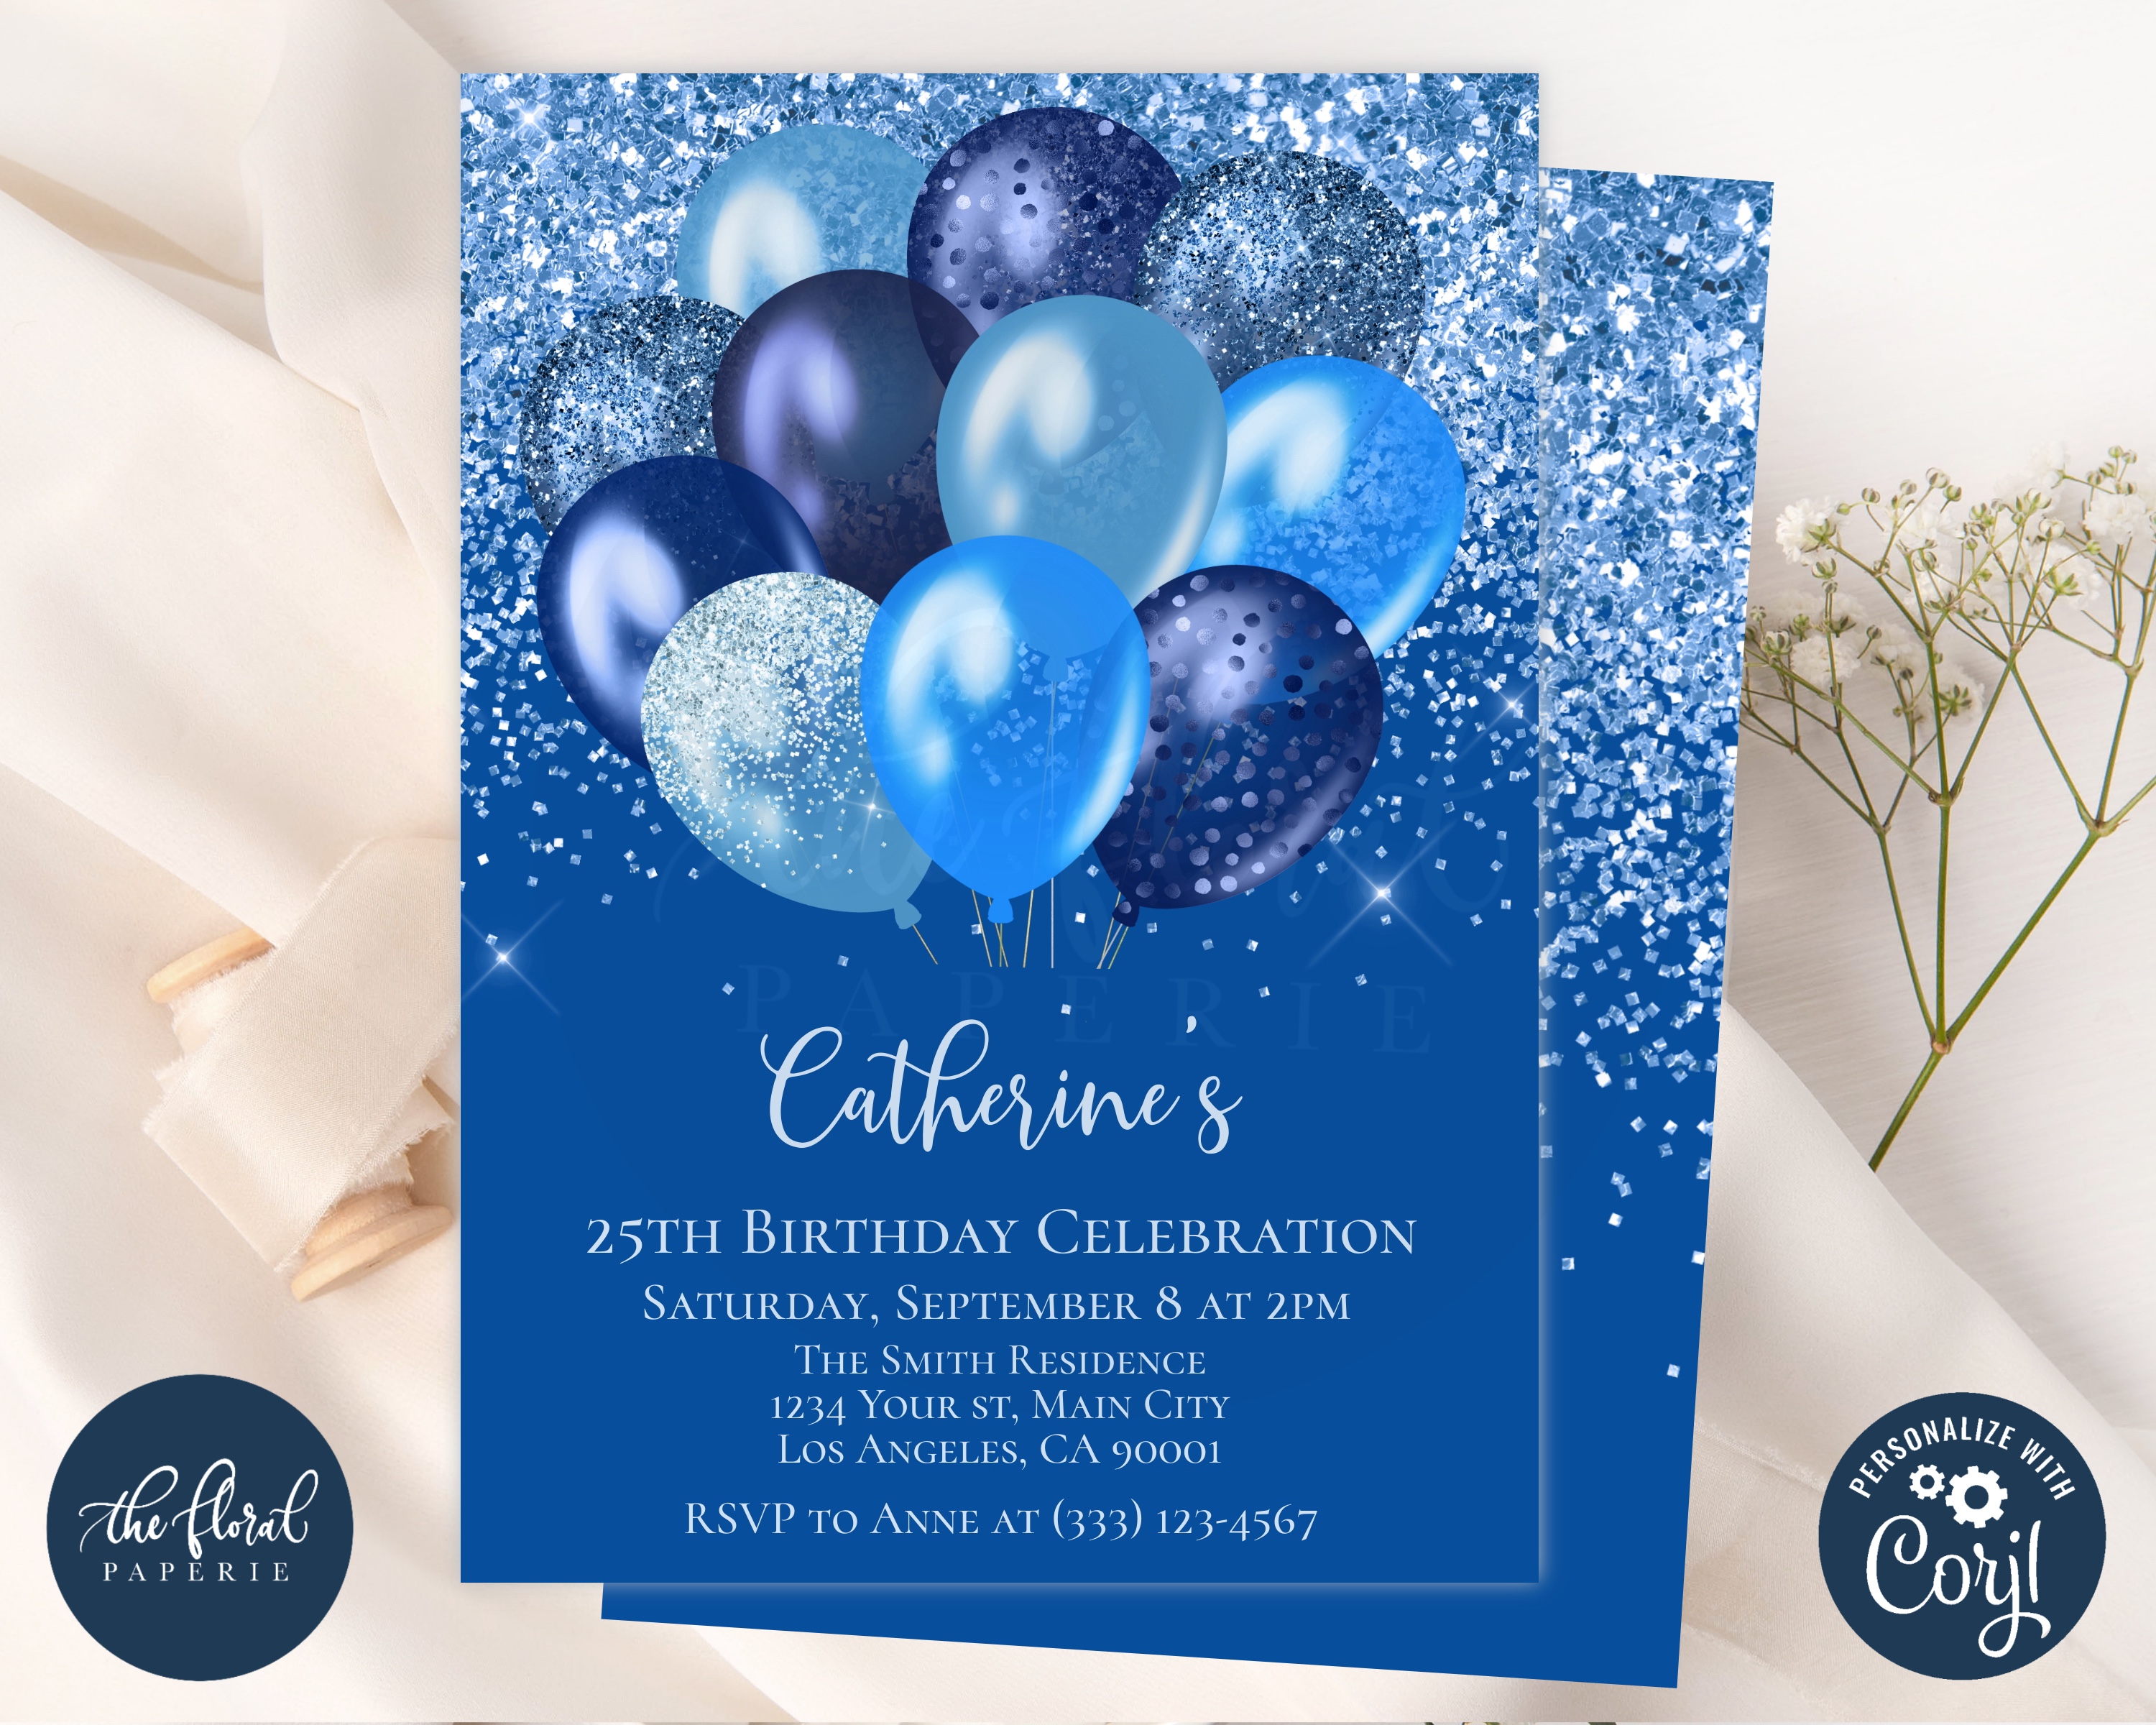 BLUEY THEME BIRTHDAY PARTY INVITATIONS BLUEY PARTY INVITES